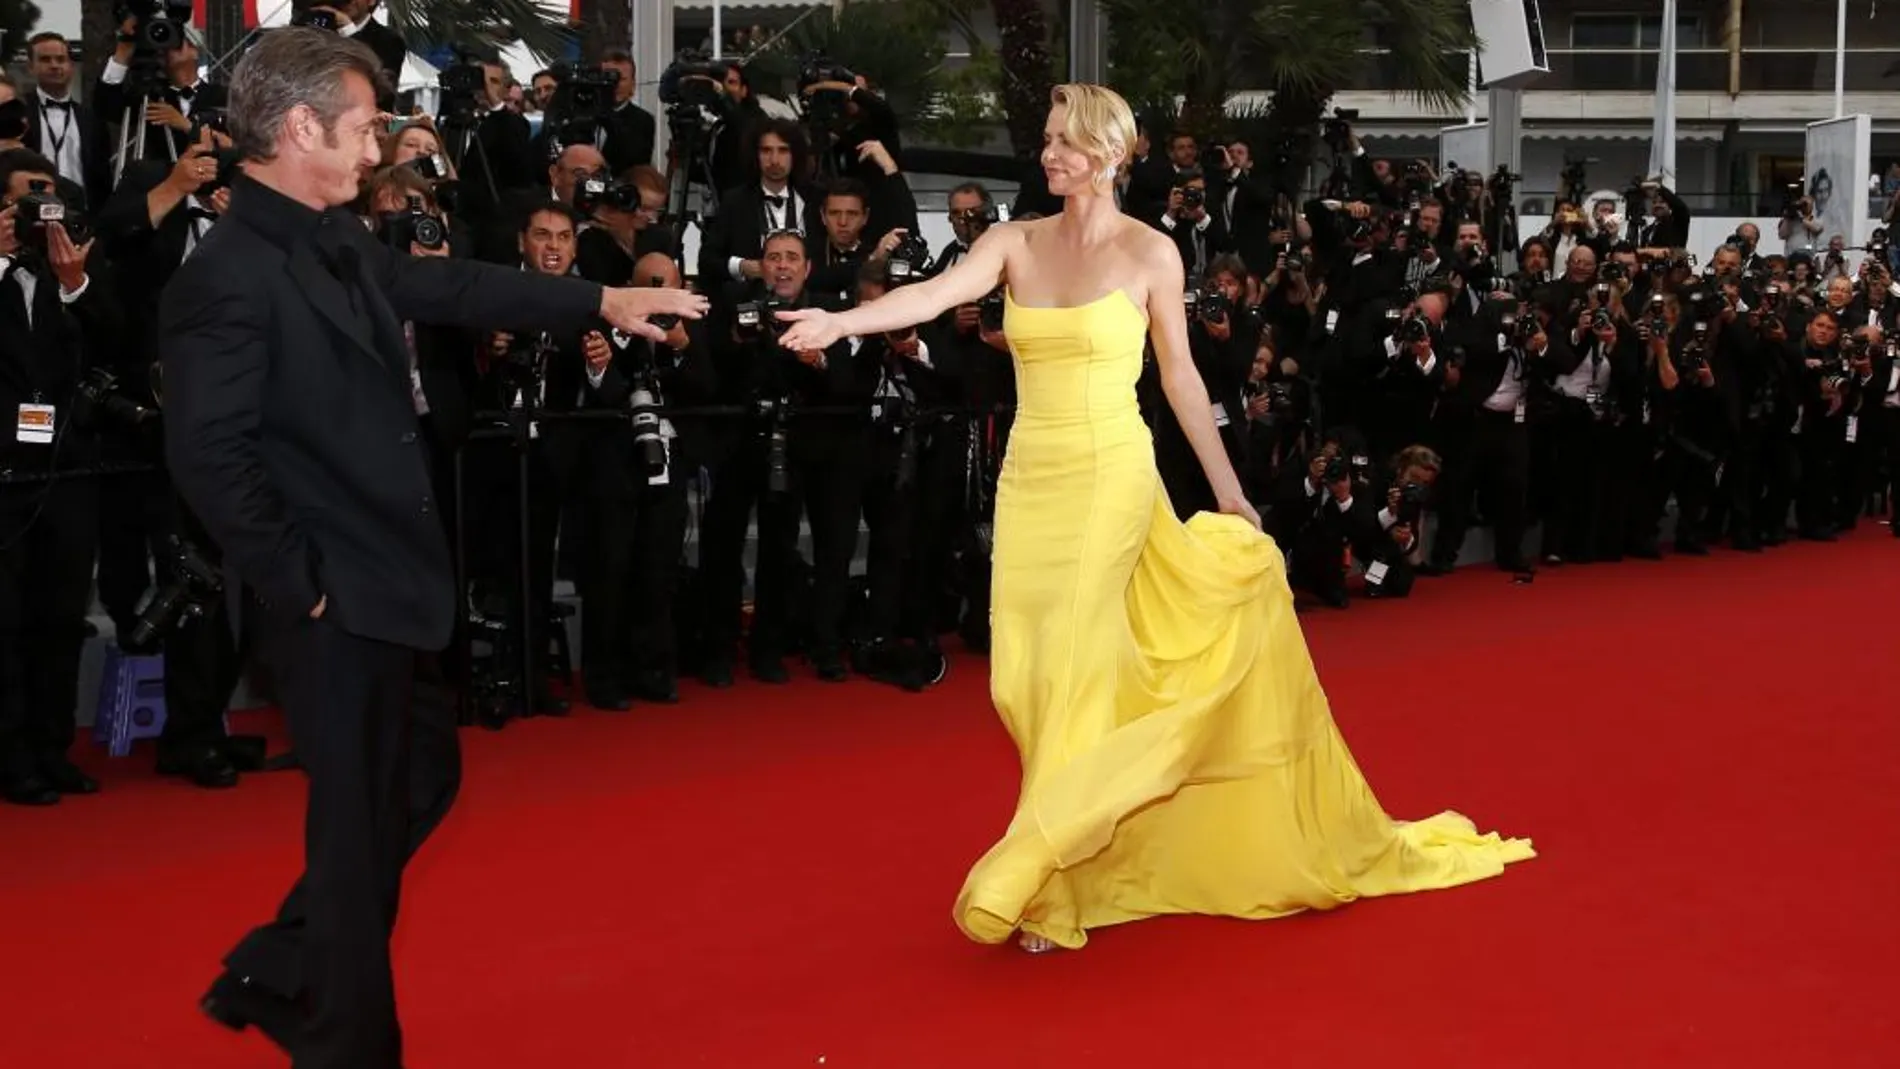 Sean Penn y Charlize Theron: lo que el amor separó, Cannes lo vuelve a unir